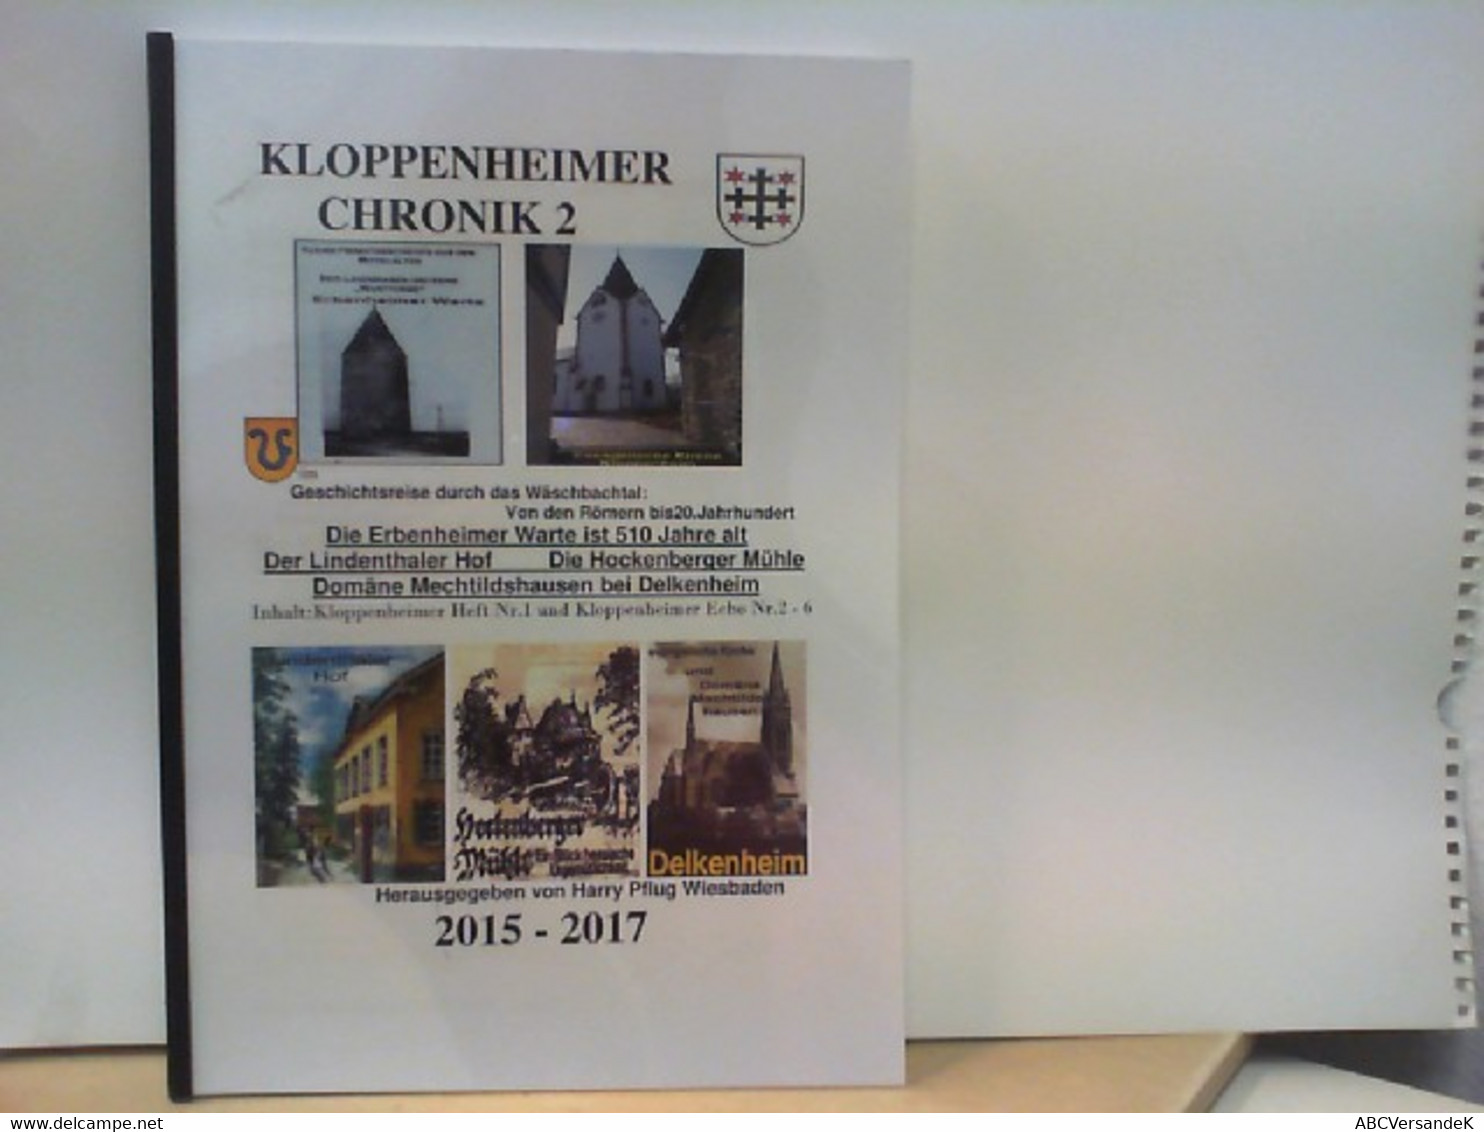 Kloppenheimer Chronik 2 2015 - 2017 - Hesse